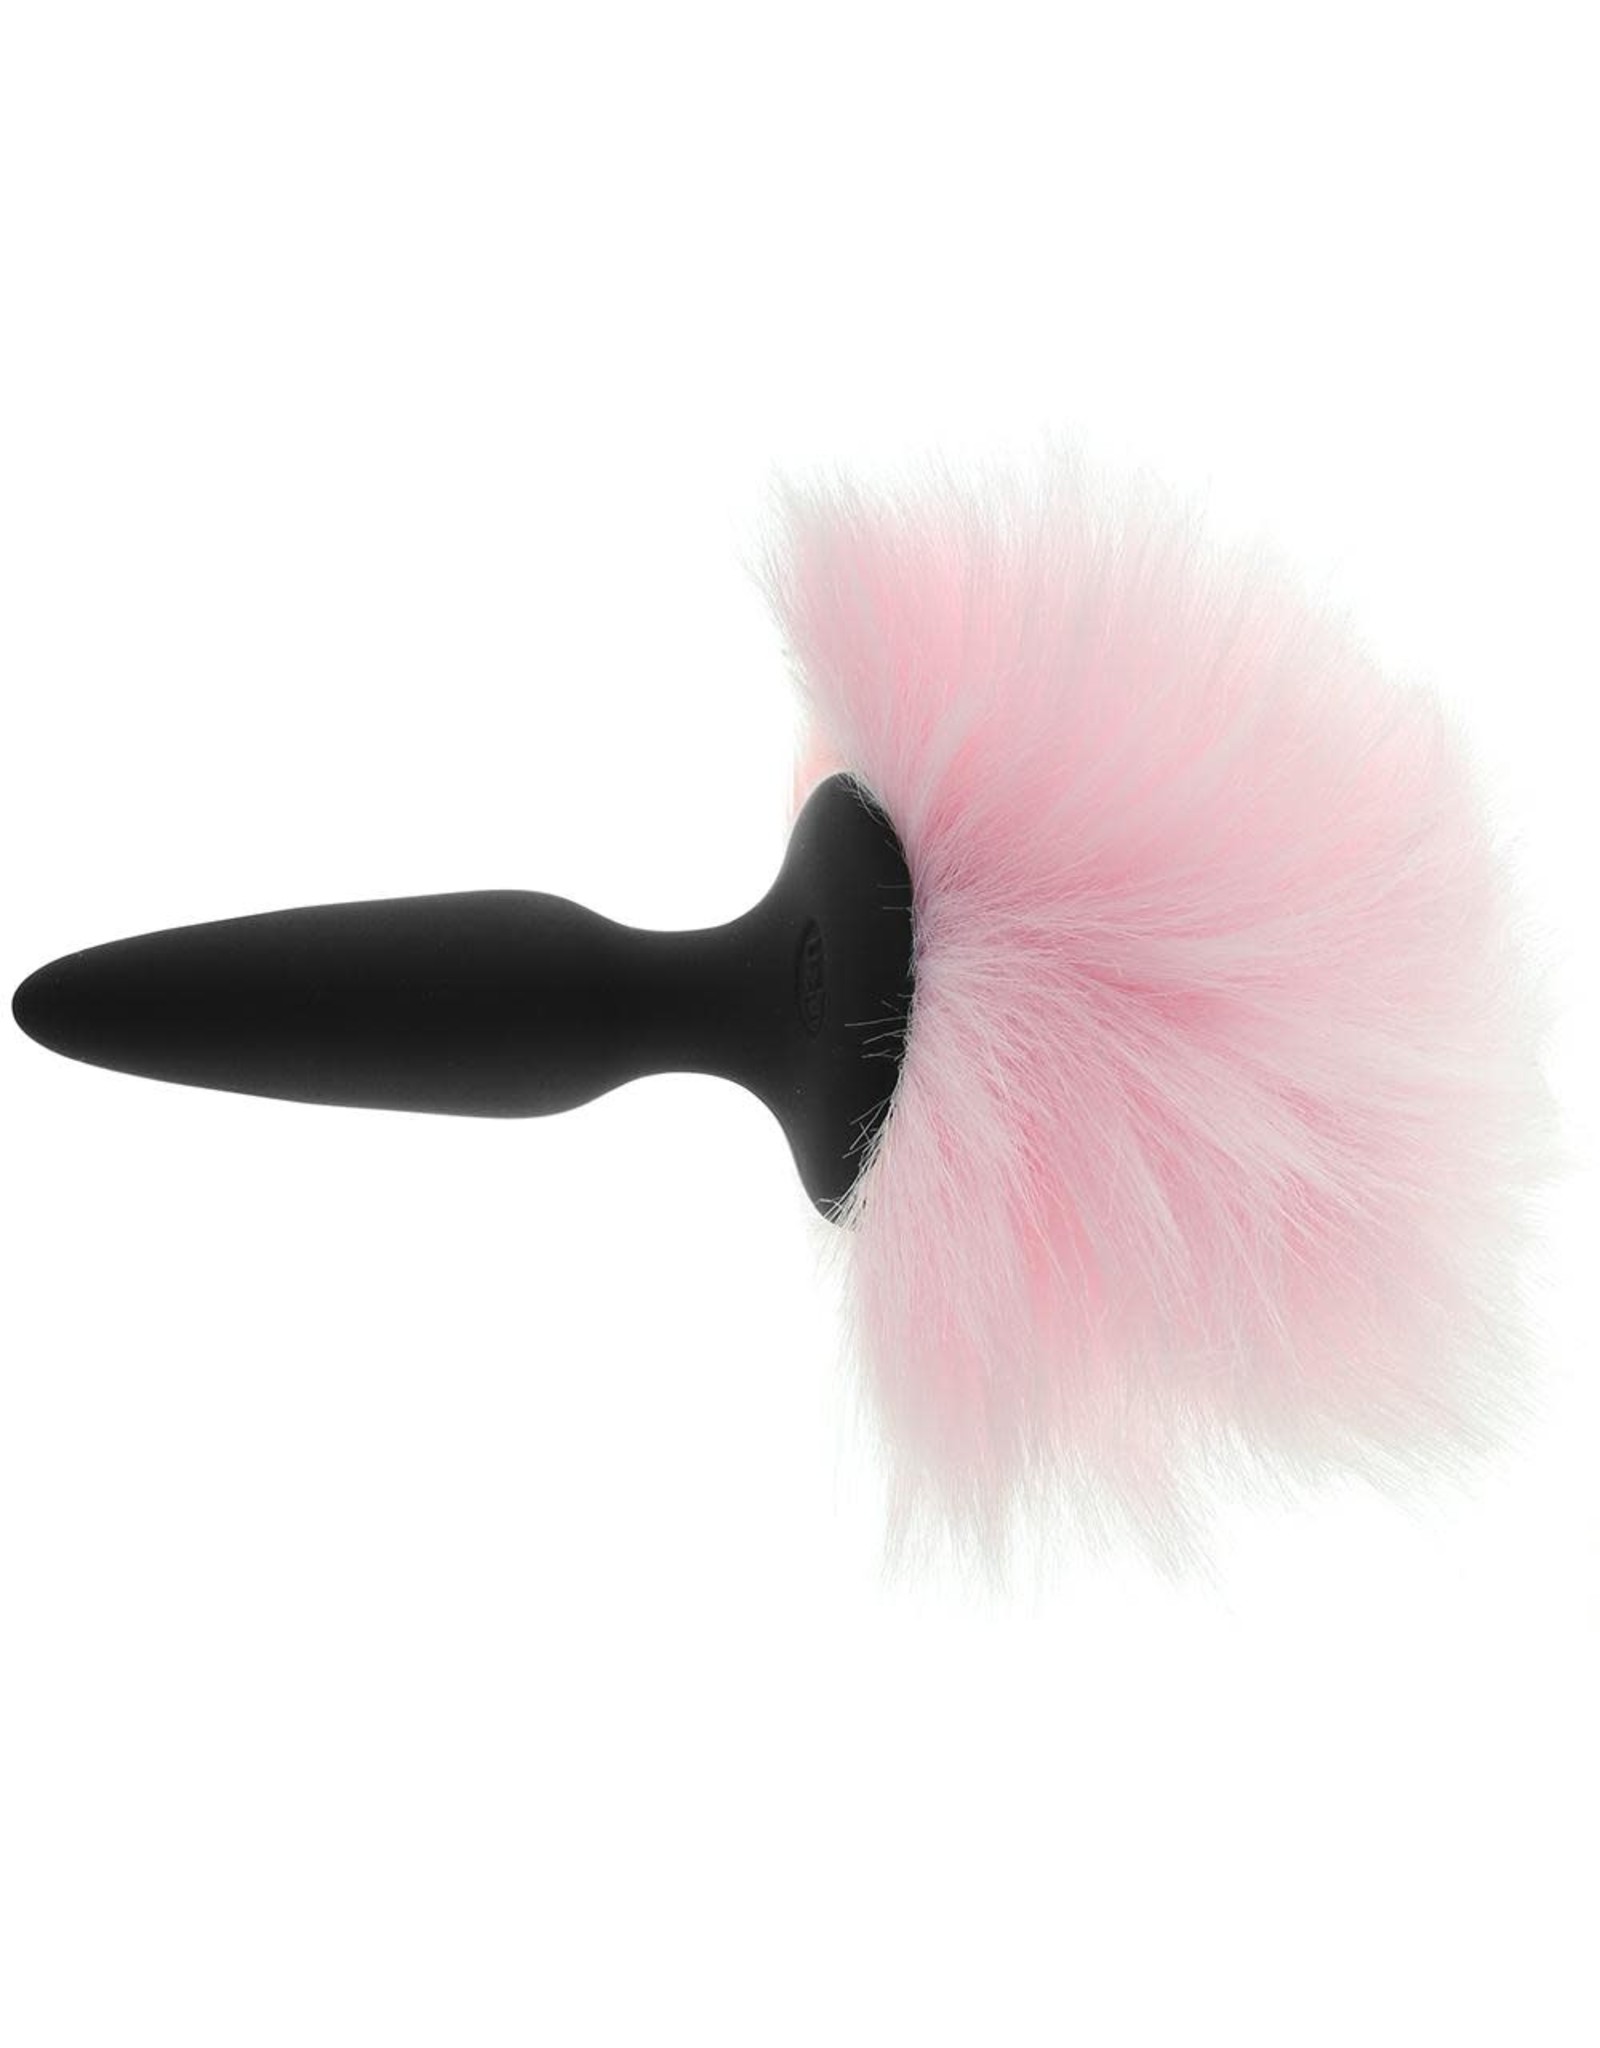 Bunny Tails Mini - Black/Pink